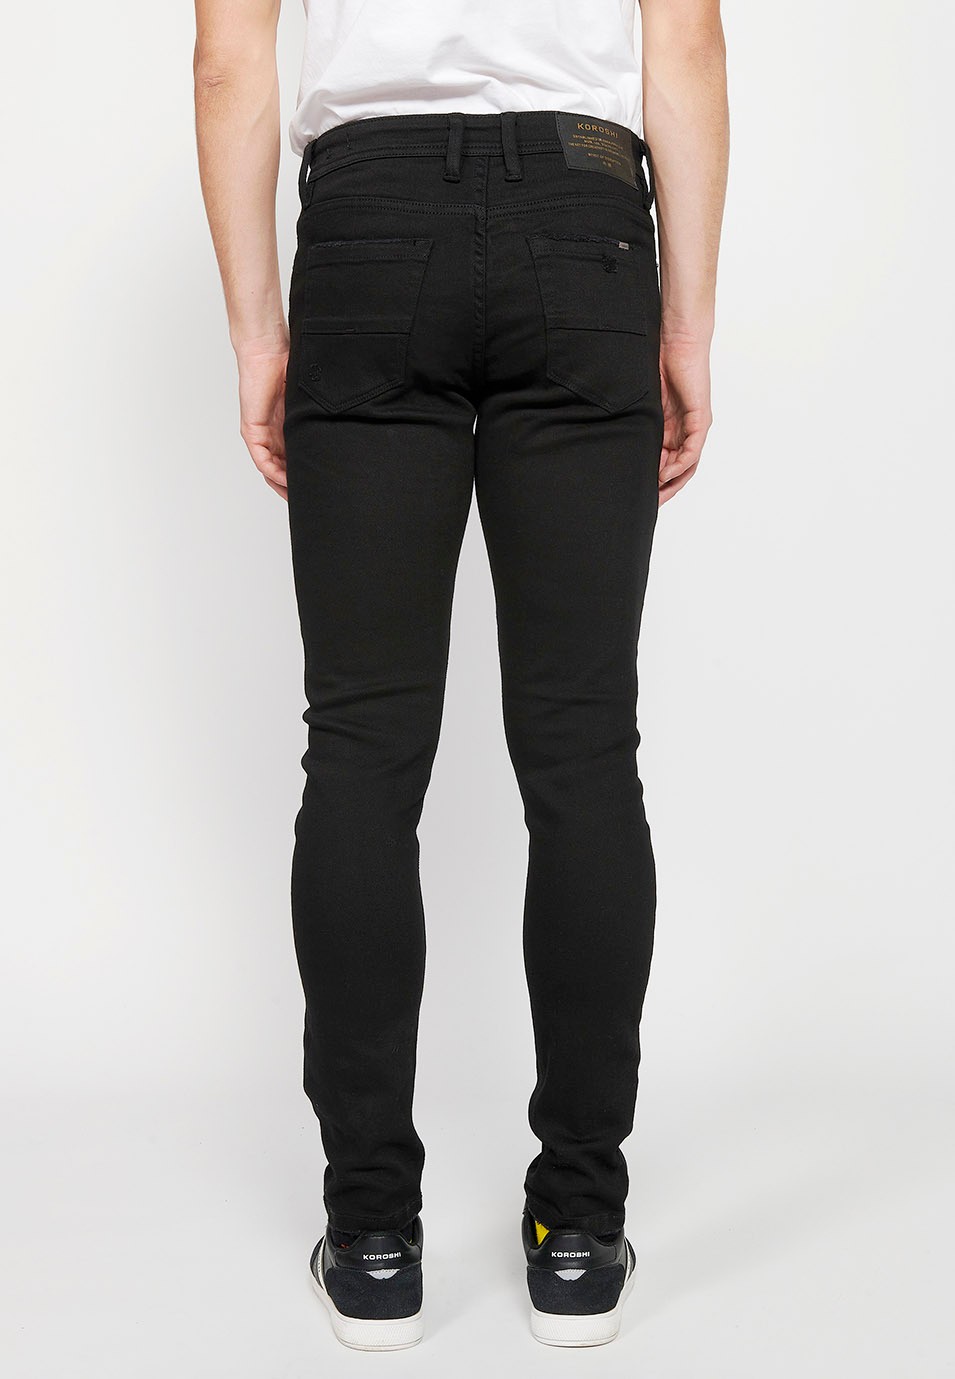 Pantalón jeans largo slim super skinny con Cierre delantero con cremallera y botón de Color Denim Negro para Hombre 4